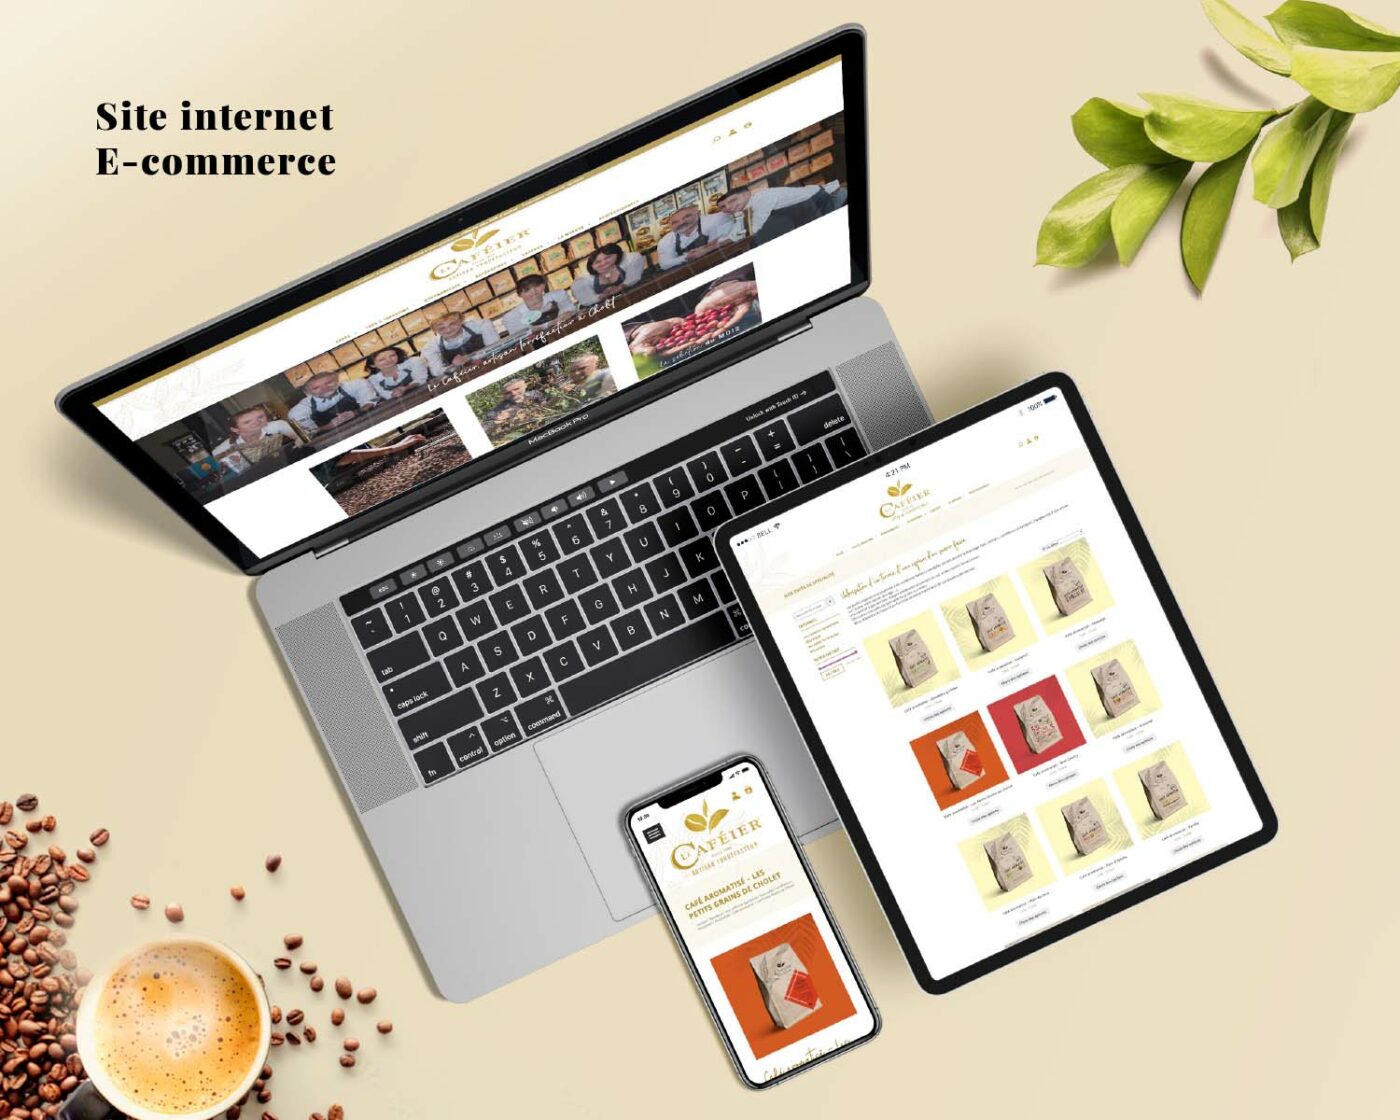 Création et développement du site internet ecommerce lecafeier.fr